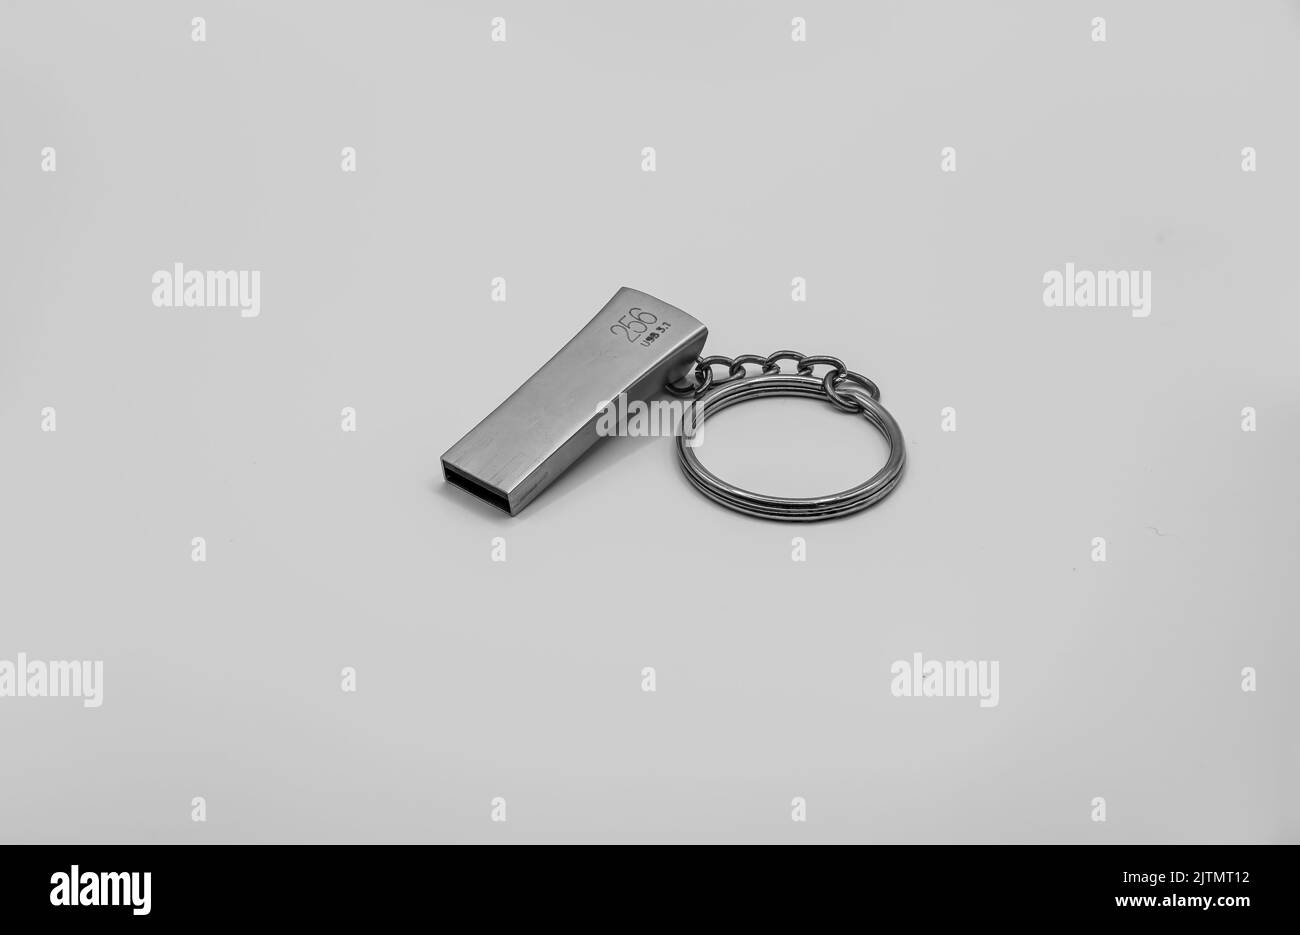 Gros plan de la clé USB pour périphérique de stockage portable Banque D'Images